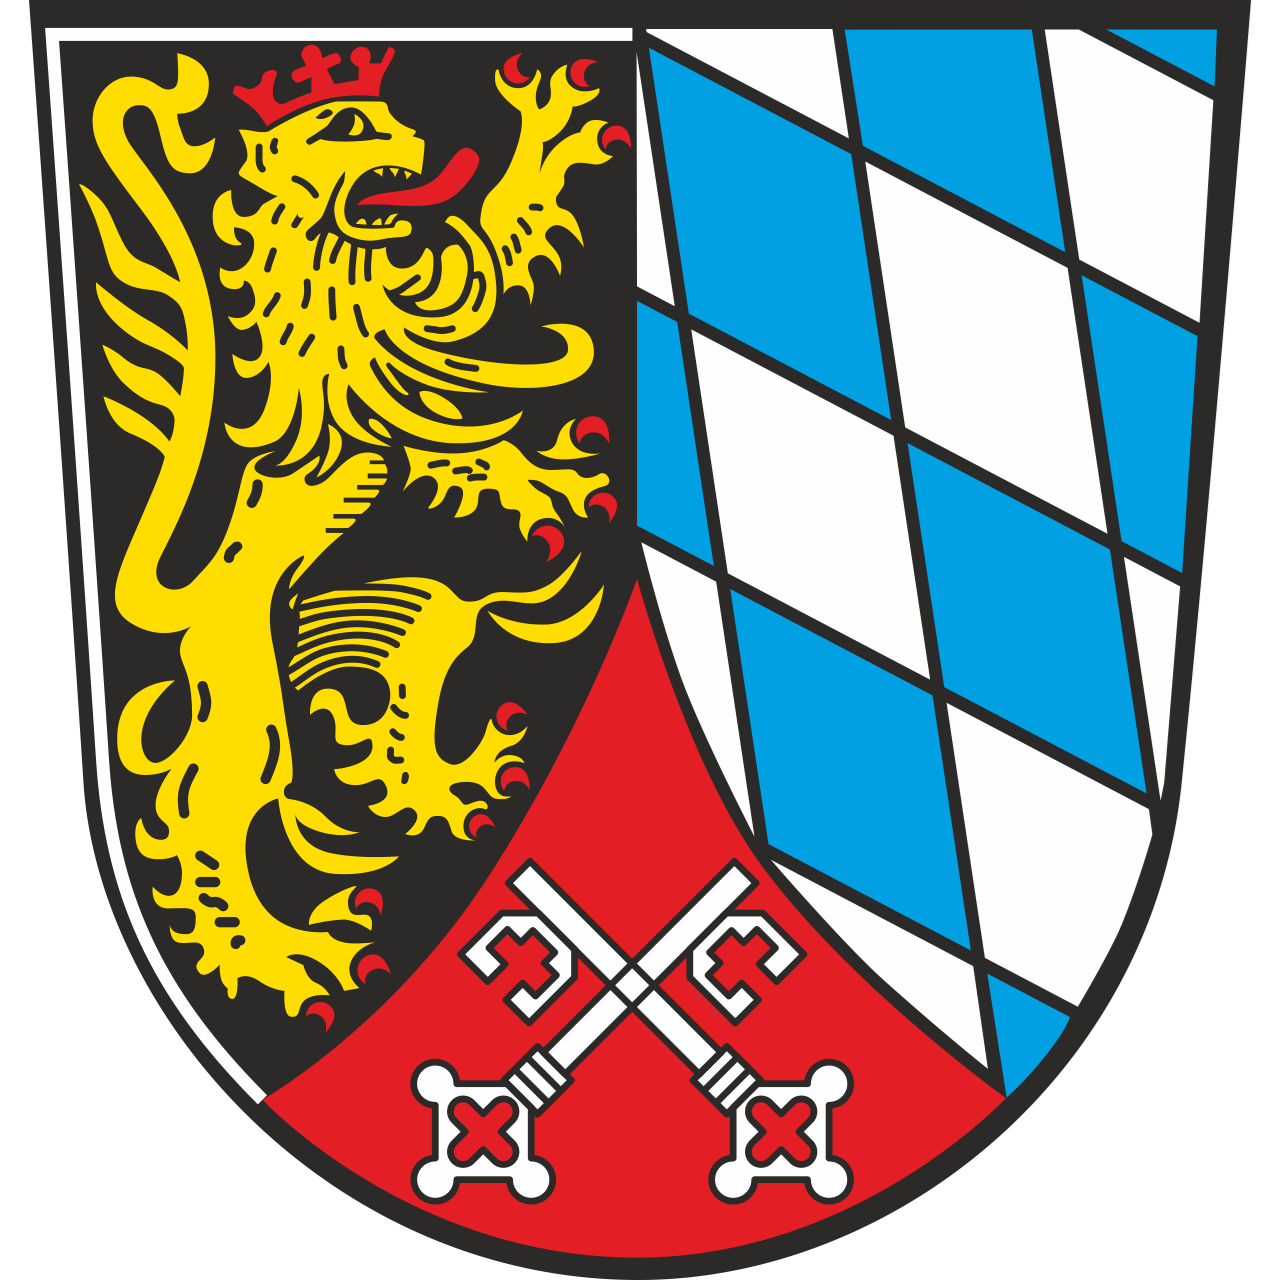 Wappen der Oberpfalz